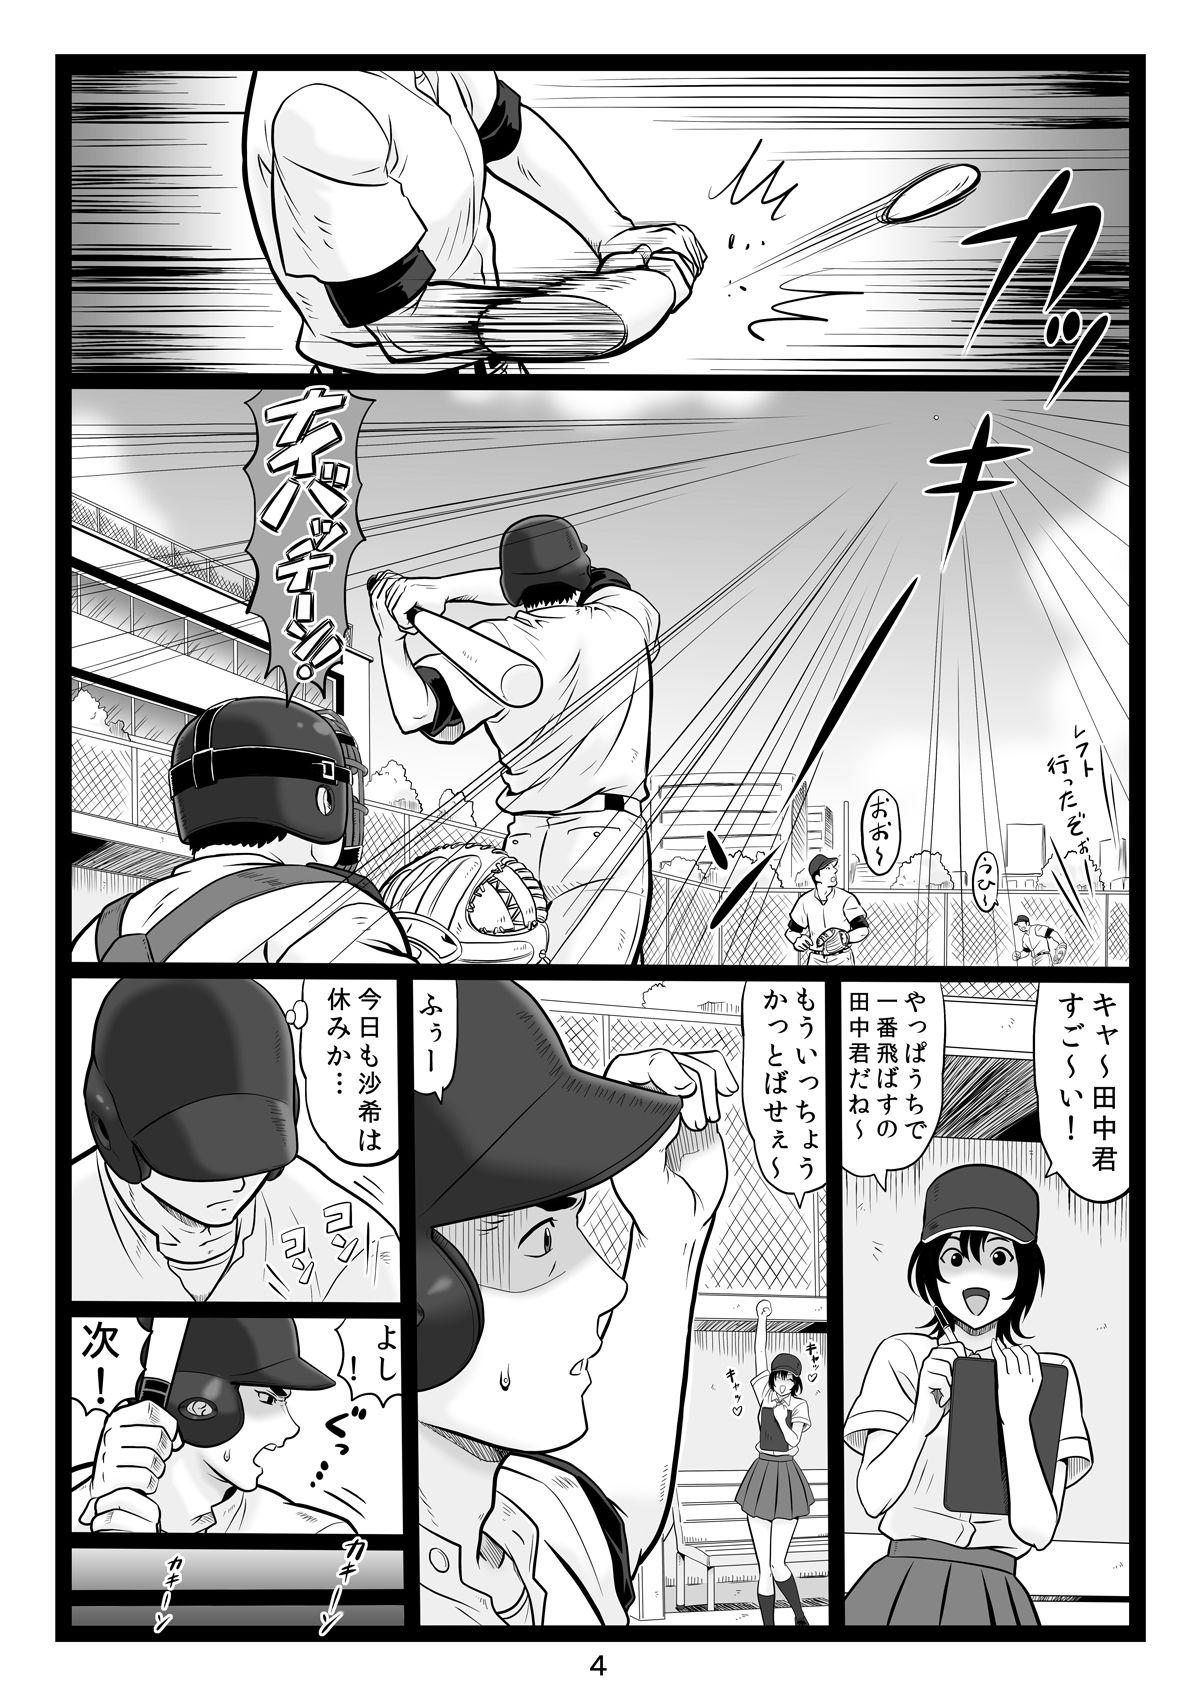 Bareback Tawawa de Akarui Yakyuubu Manager ga Inshitsu na Kyoushi no Wana ni... Sonogo... - Original Free Blowjobs - Page 4